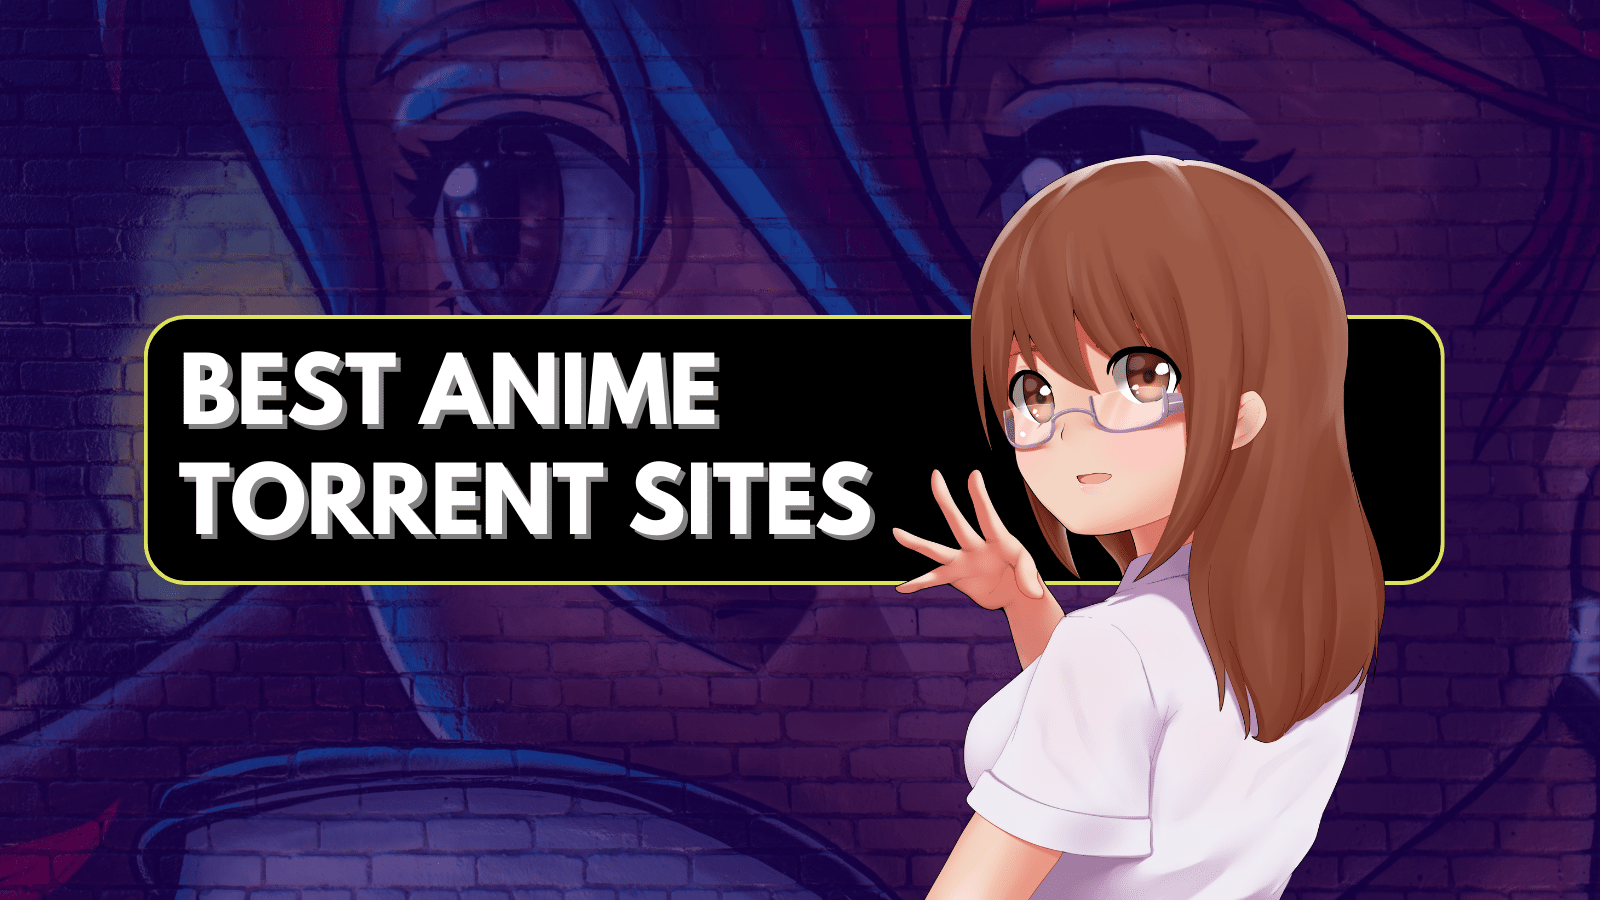 Anime sharing torrent